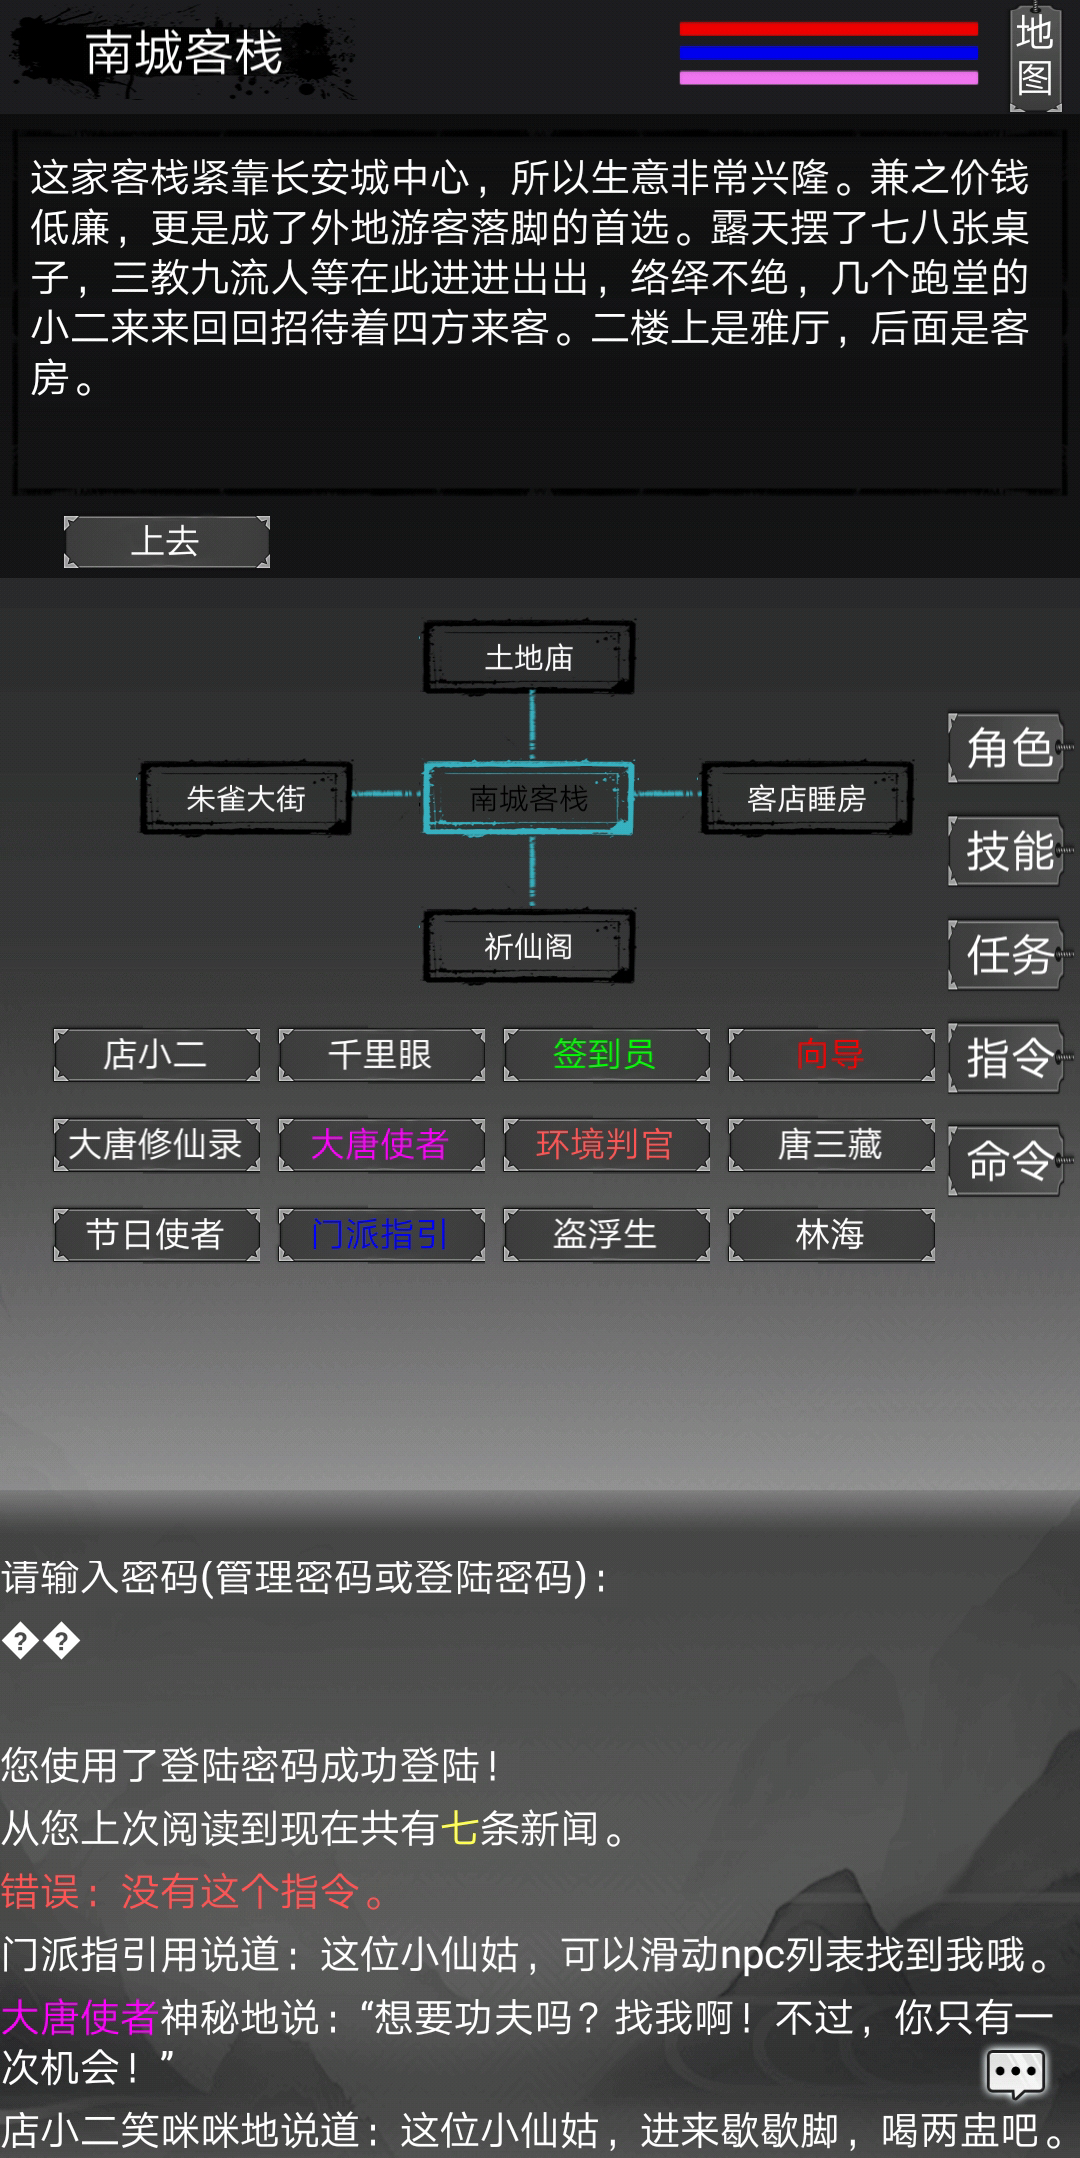 Screenshot 1 of Ghi chép về sự tu luyện bất tử trong triều đại nhà Đường: Truyền thuyết về tu luyện người phàm 1.2.31